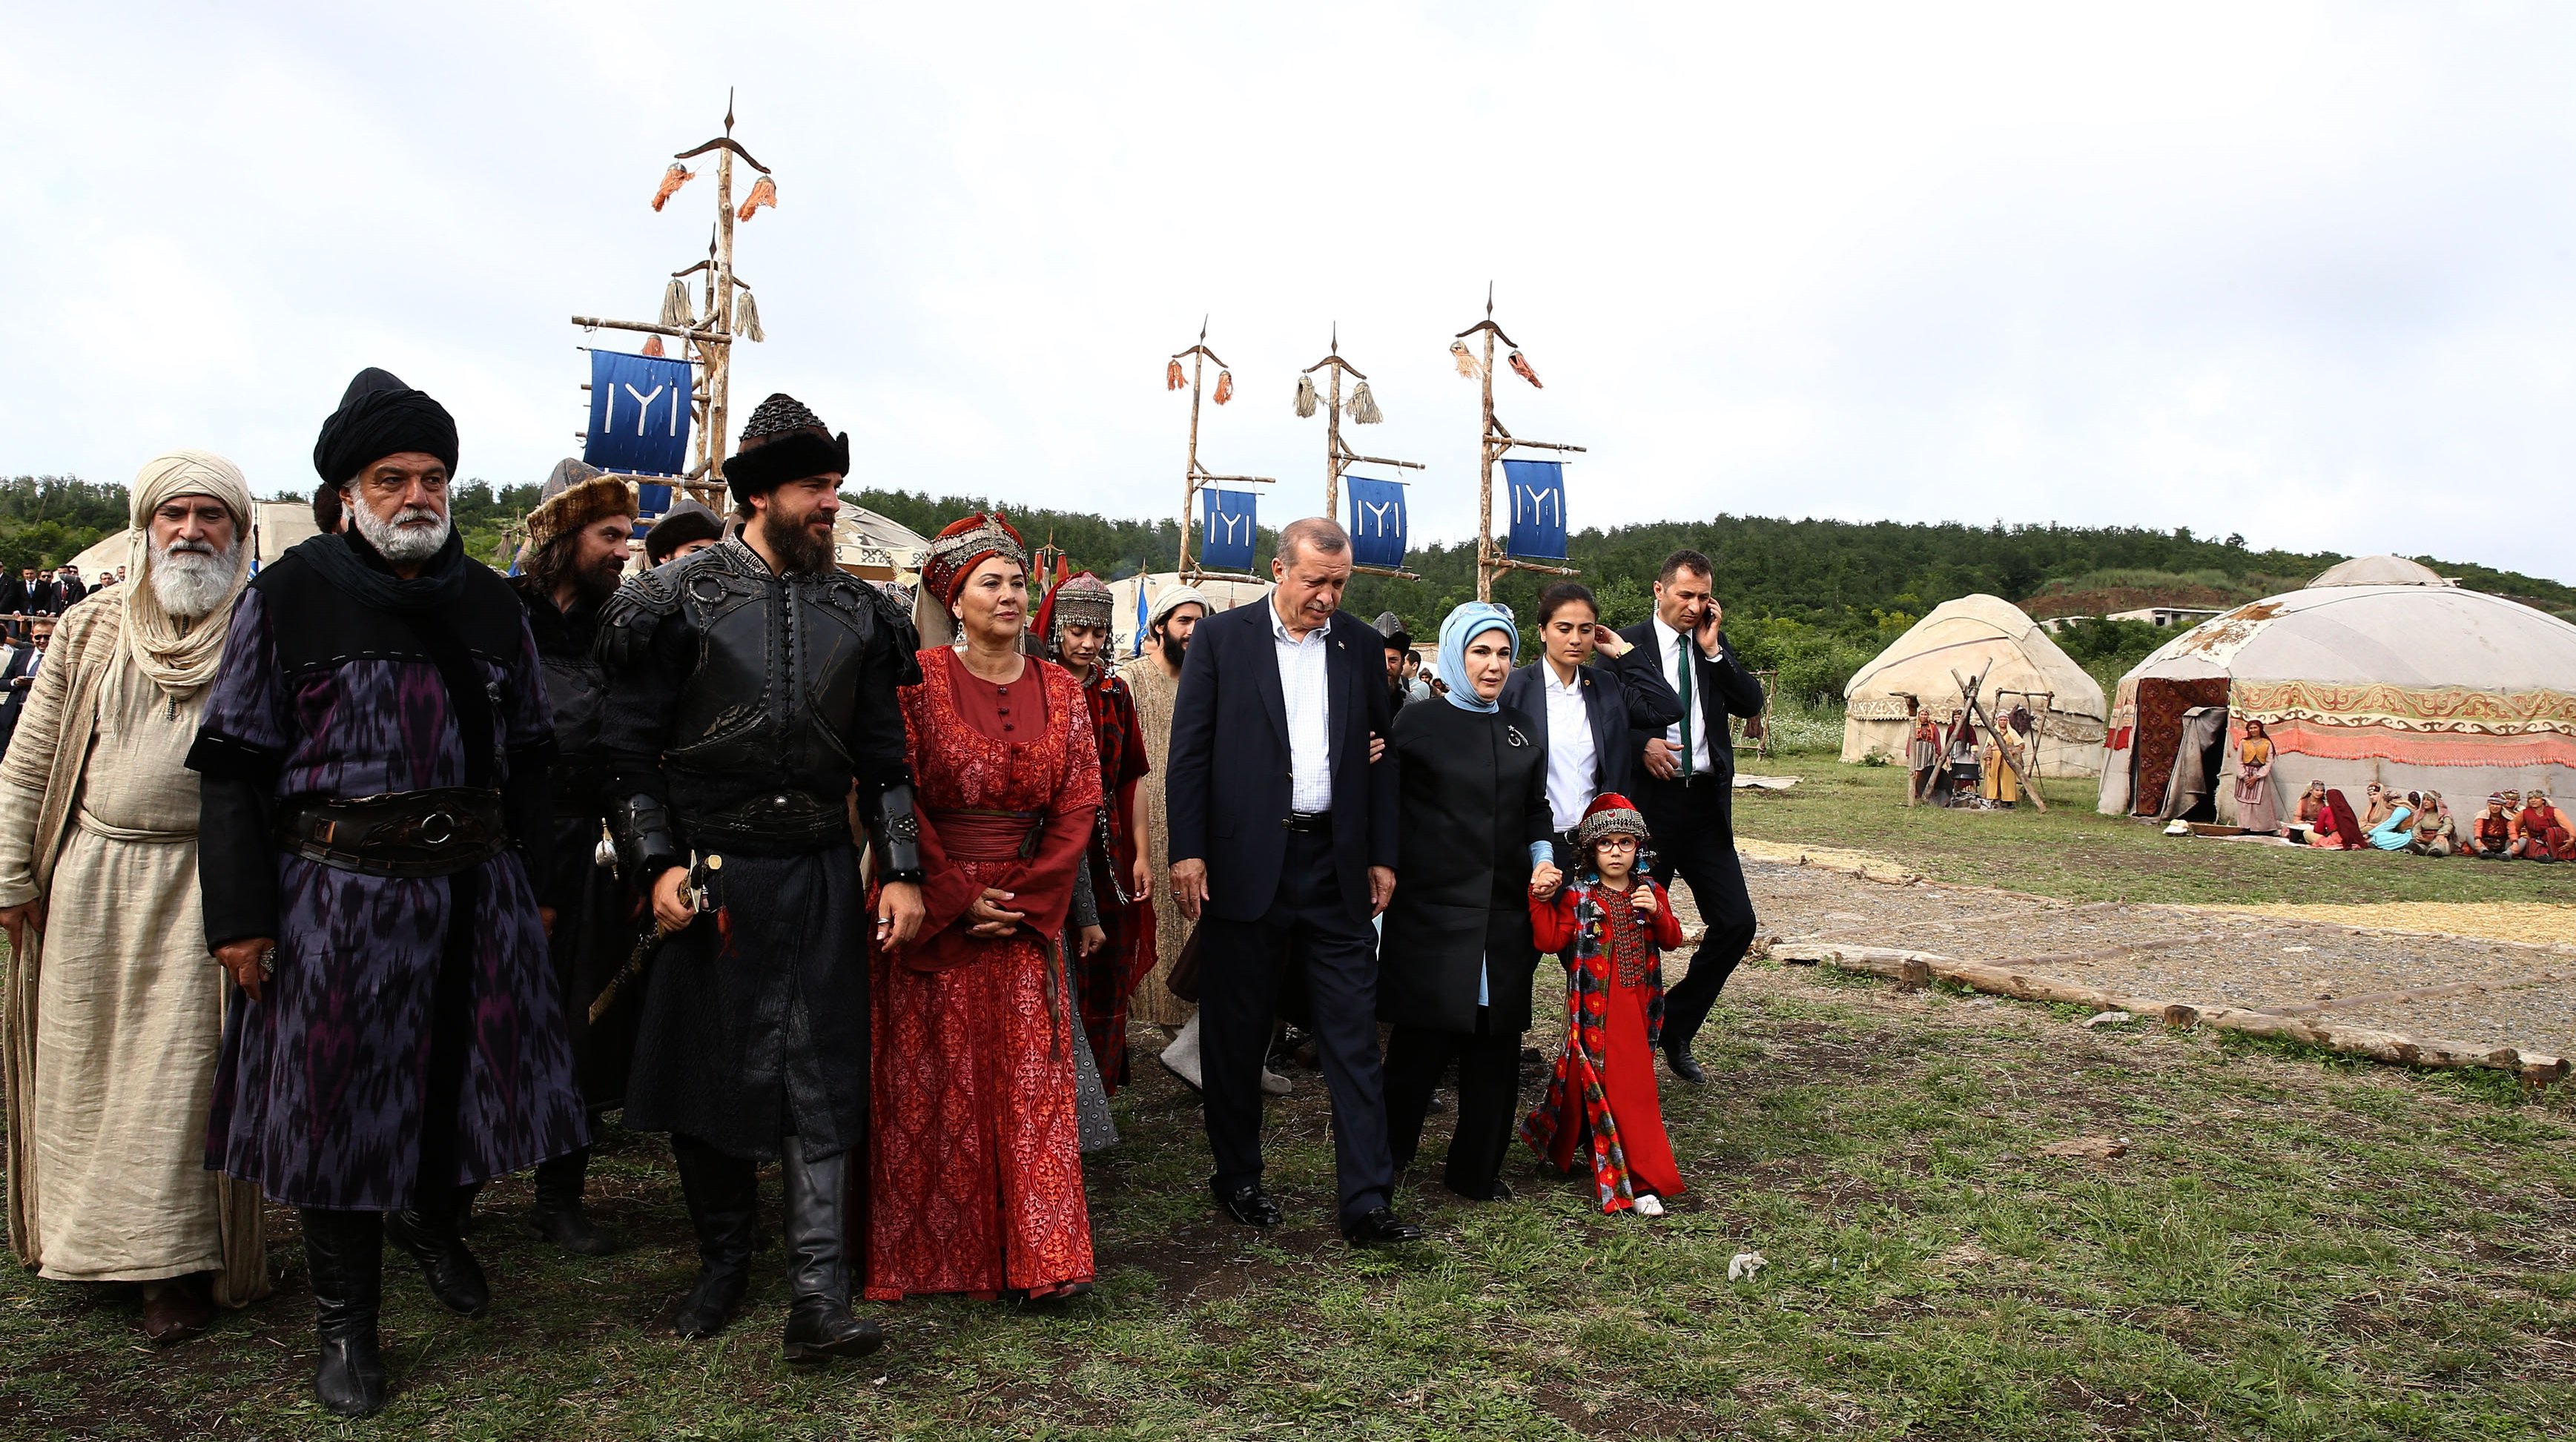 الرئيس أردوغان يُدلي برأيه في مسلسل "قيامة أرطغرل" التاريخي التركي